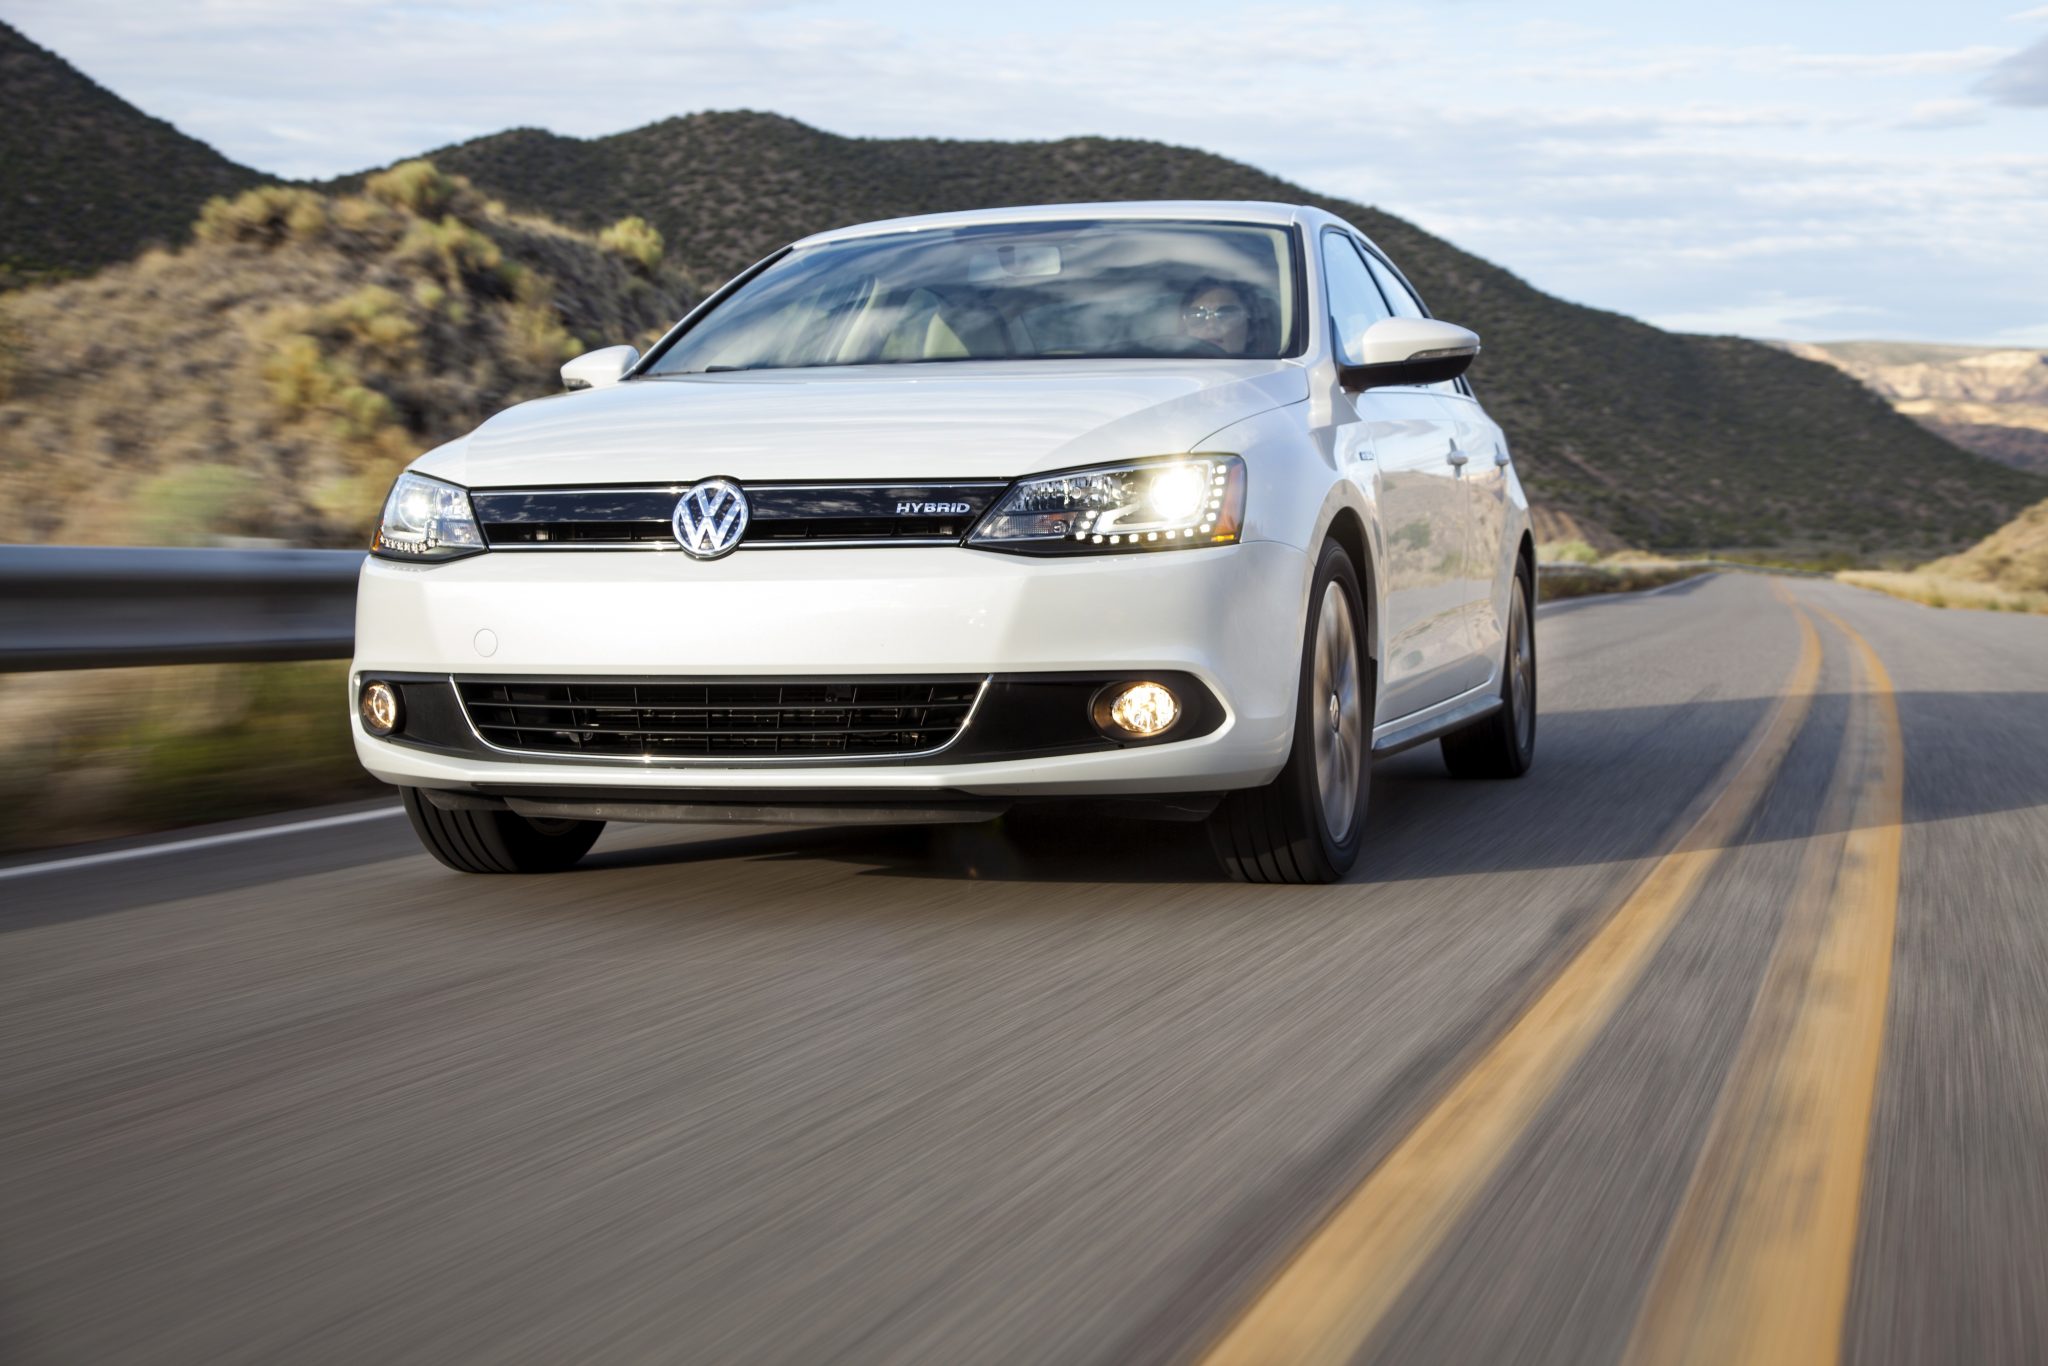 2014 Volkswagen Jetta Hybrid Overview - The News Wheel